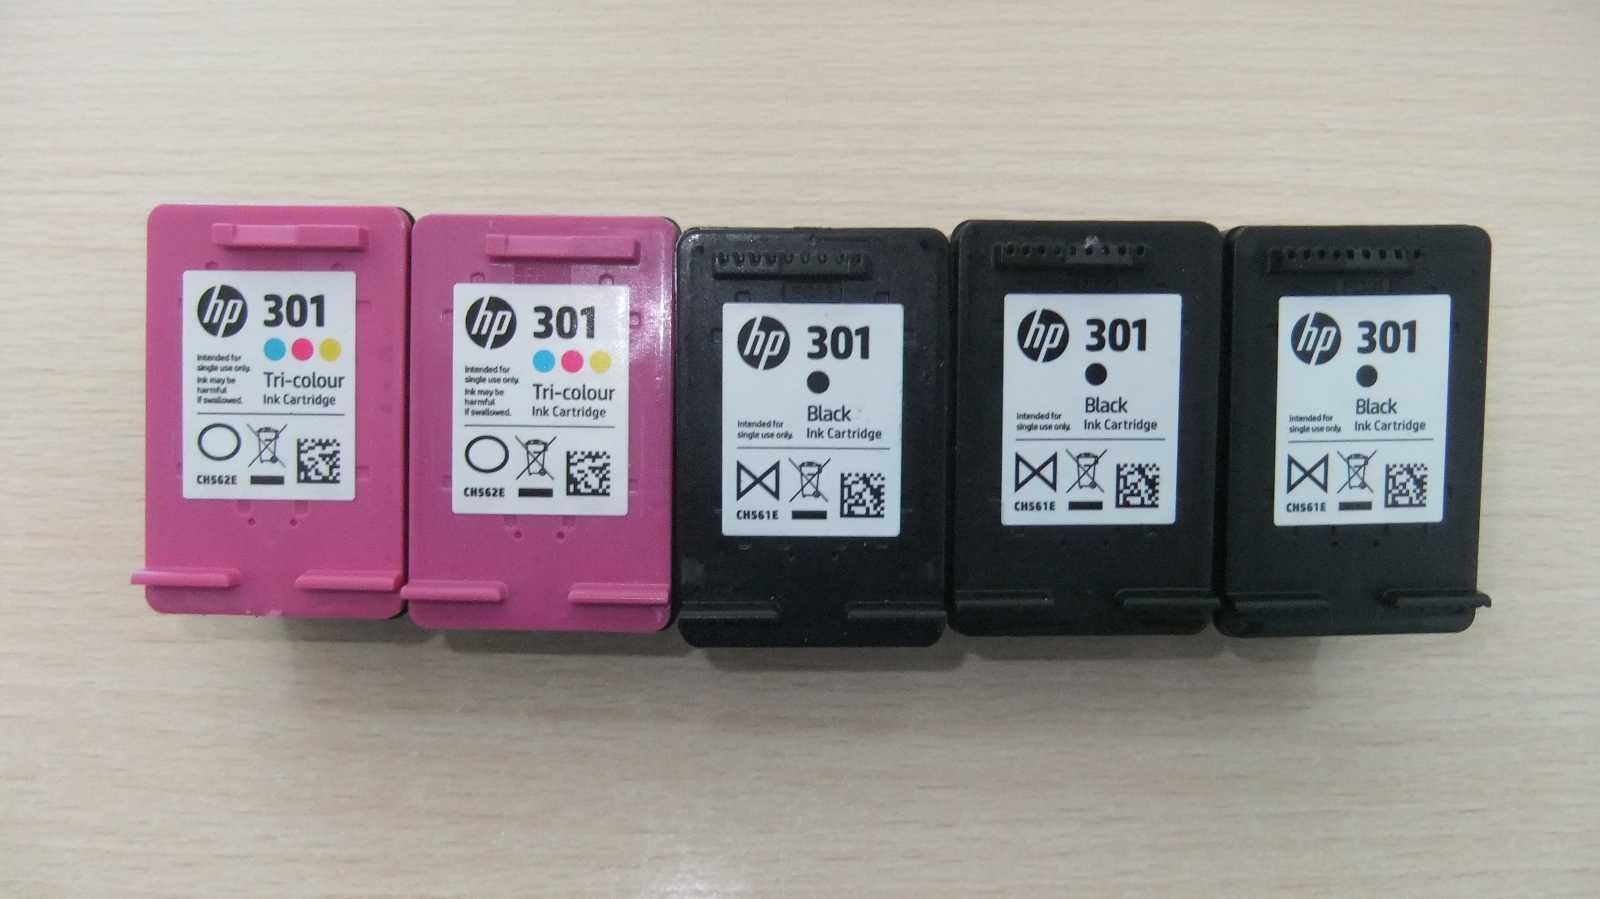 Tinteiros usados HP 301 cores para recondicionamento